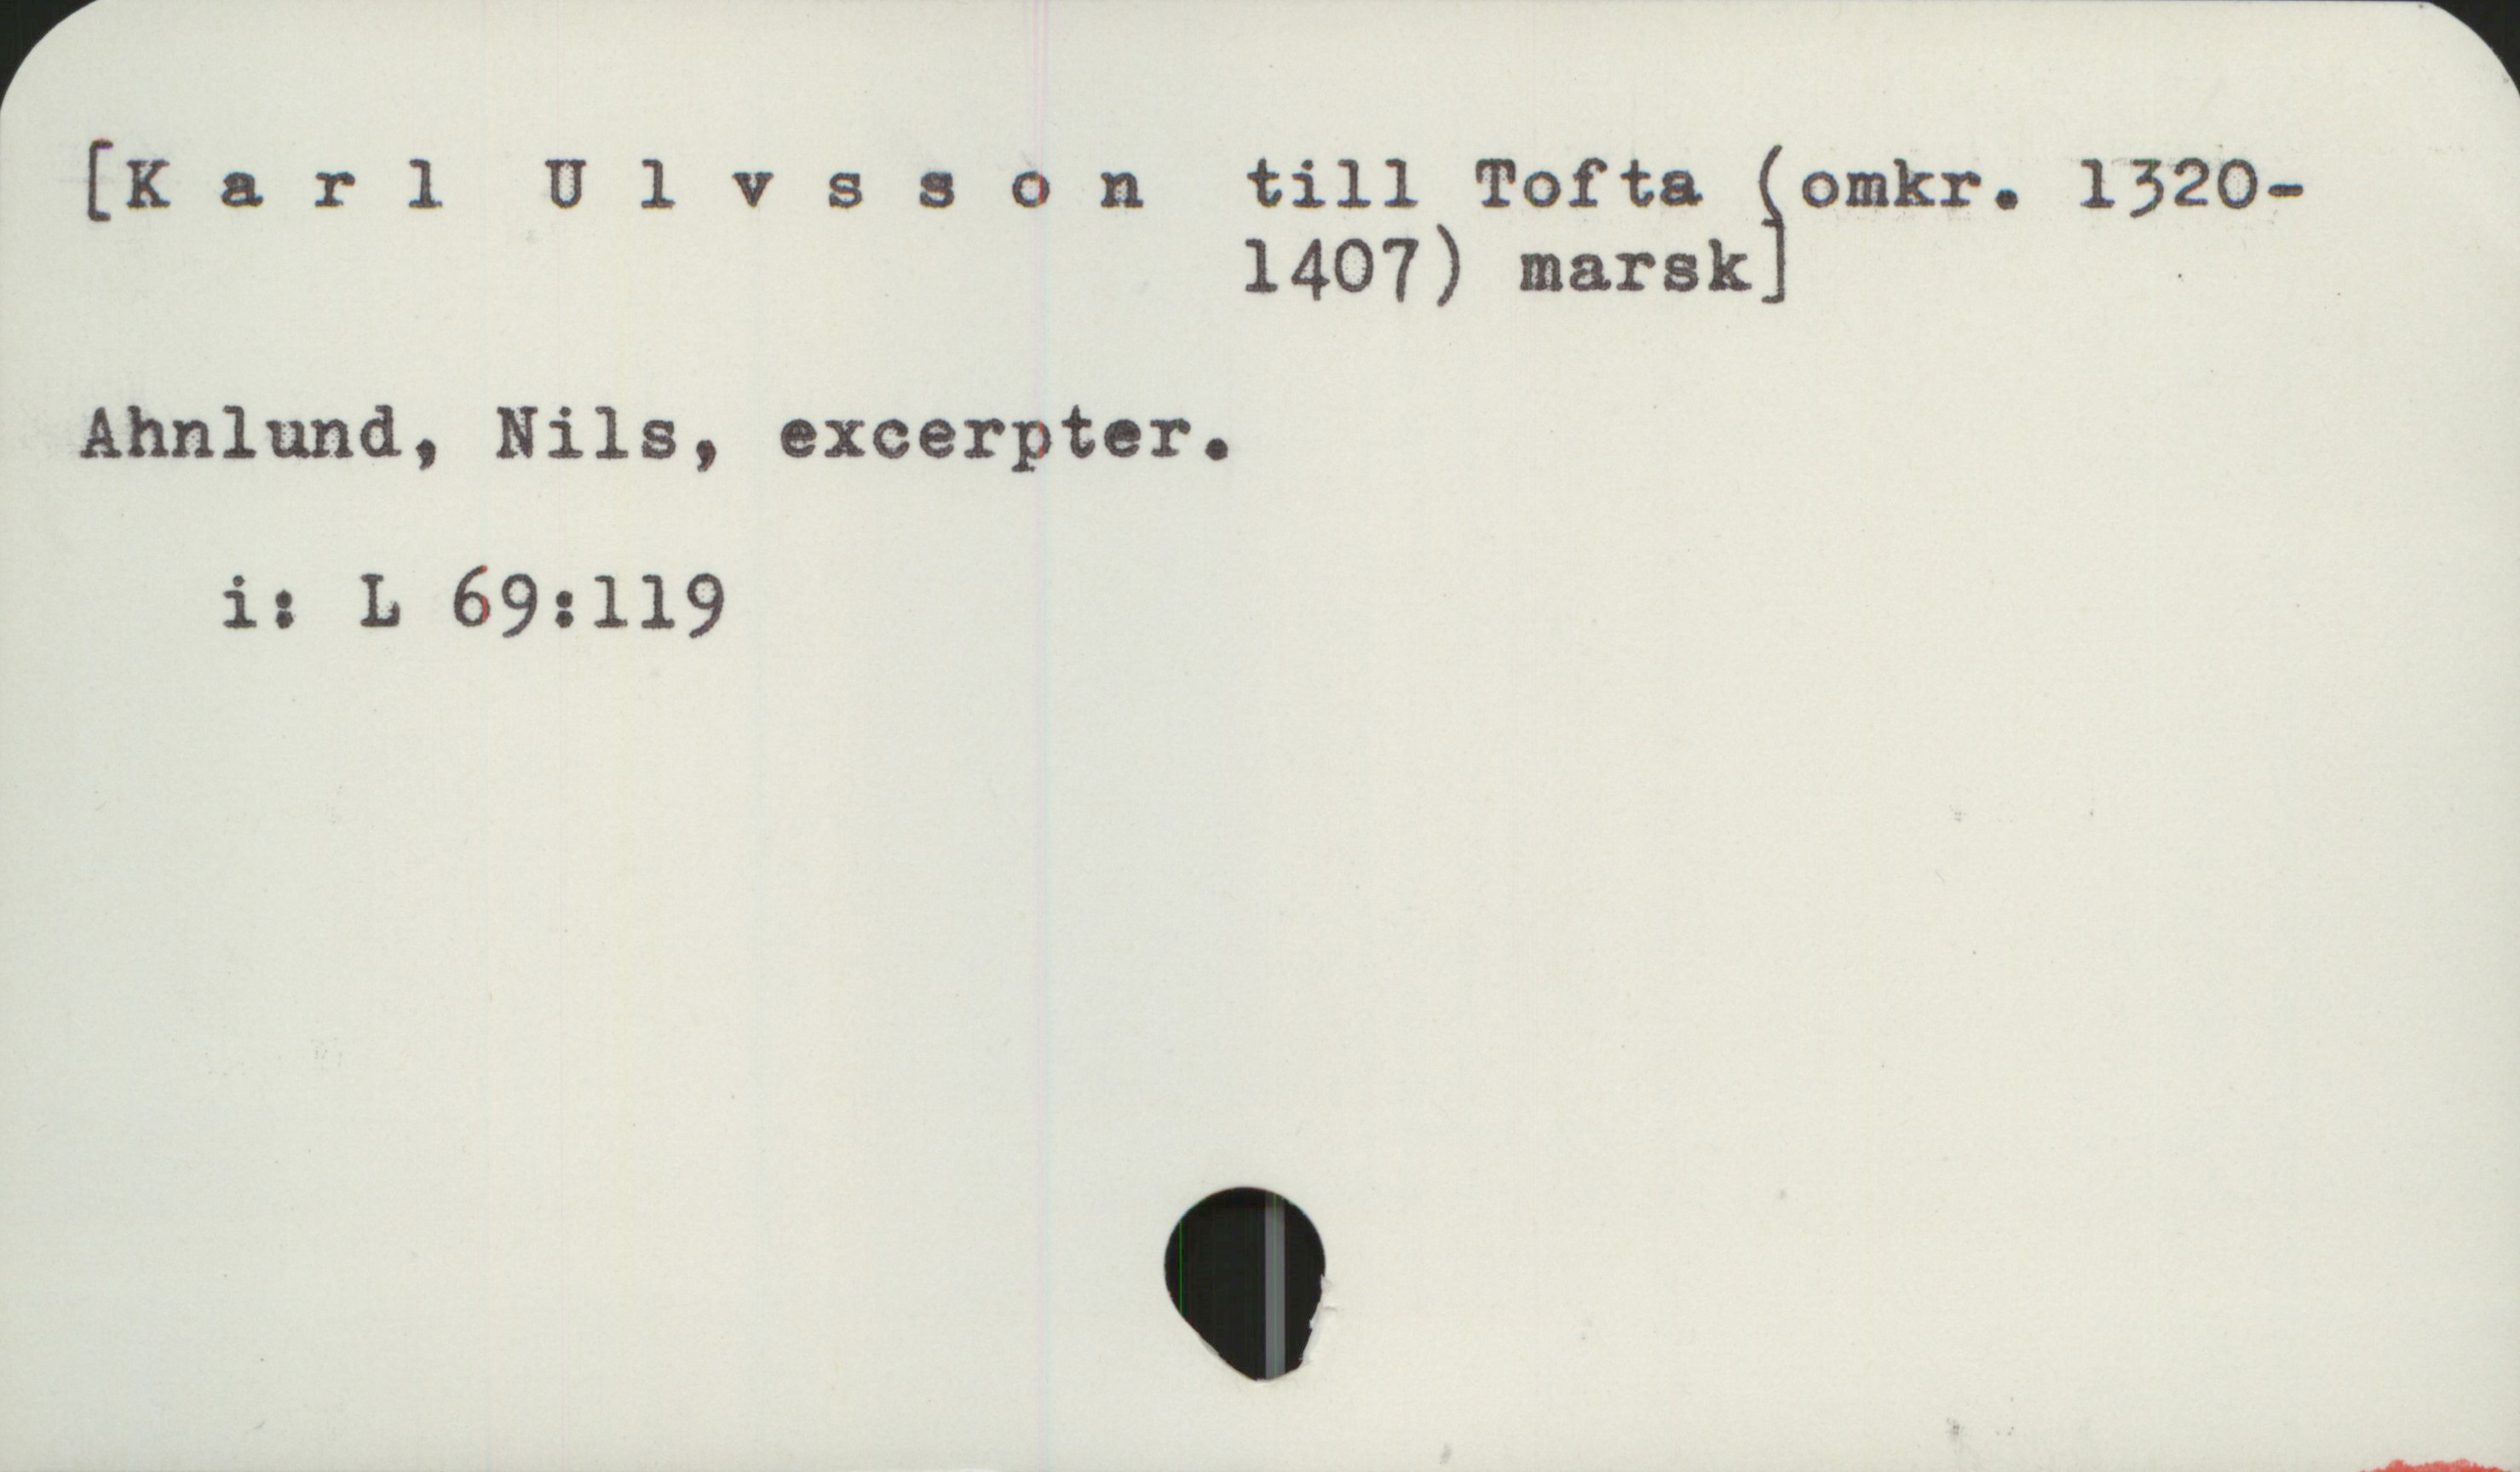  [Karl Ulvssontill Tofta Somkr. 1320-
1407) marsk -
Ahnlund, Nils, excerpter.
i: L 69:119

